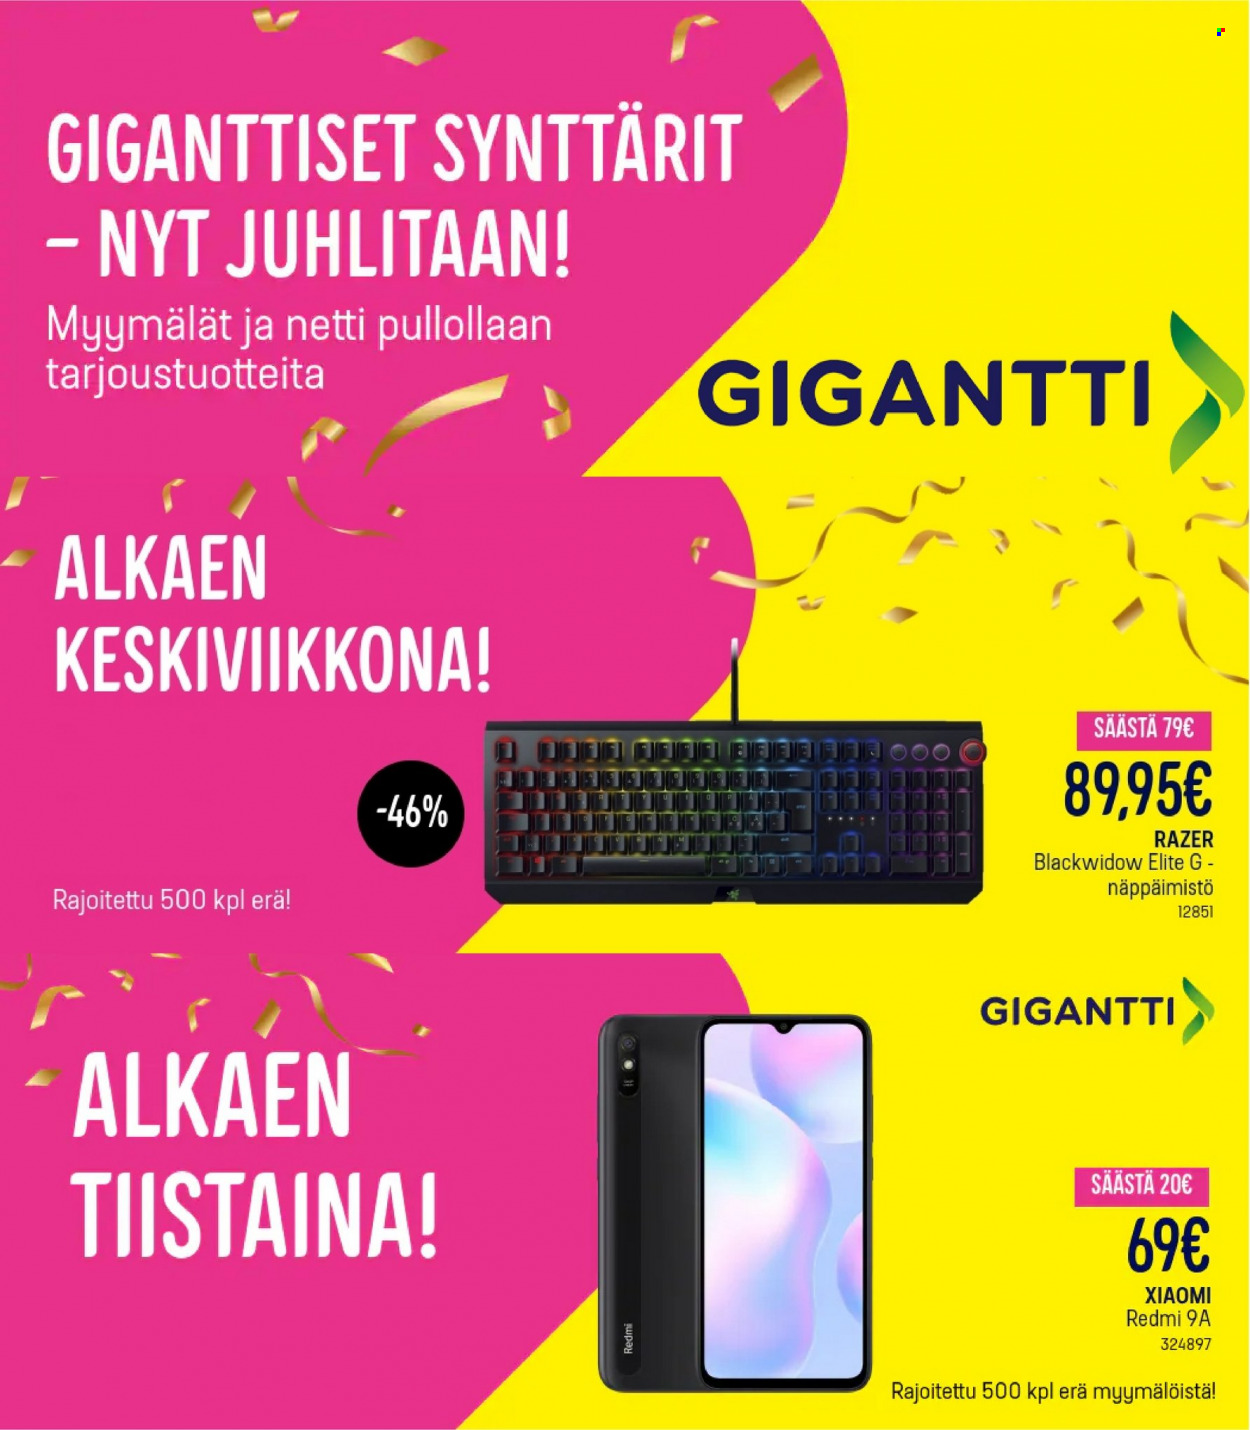 thumbnail - Gigantti tarjoukset  - 06.09.2021 - 28.09.2021 - Tarjoustuotteet - Xiaomi, Razer, näppäimistö. Sivu 1.